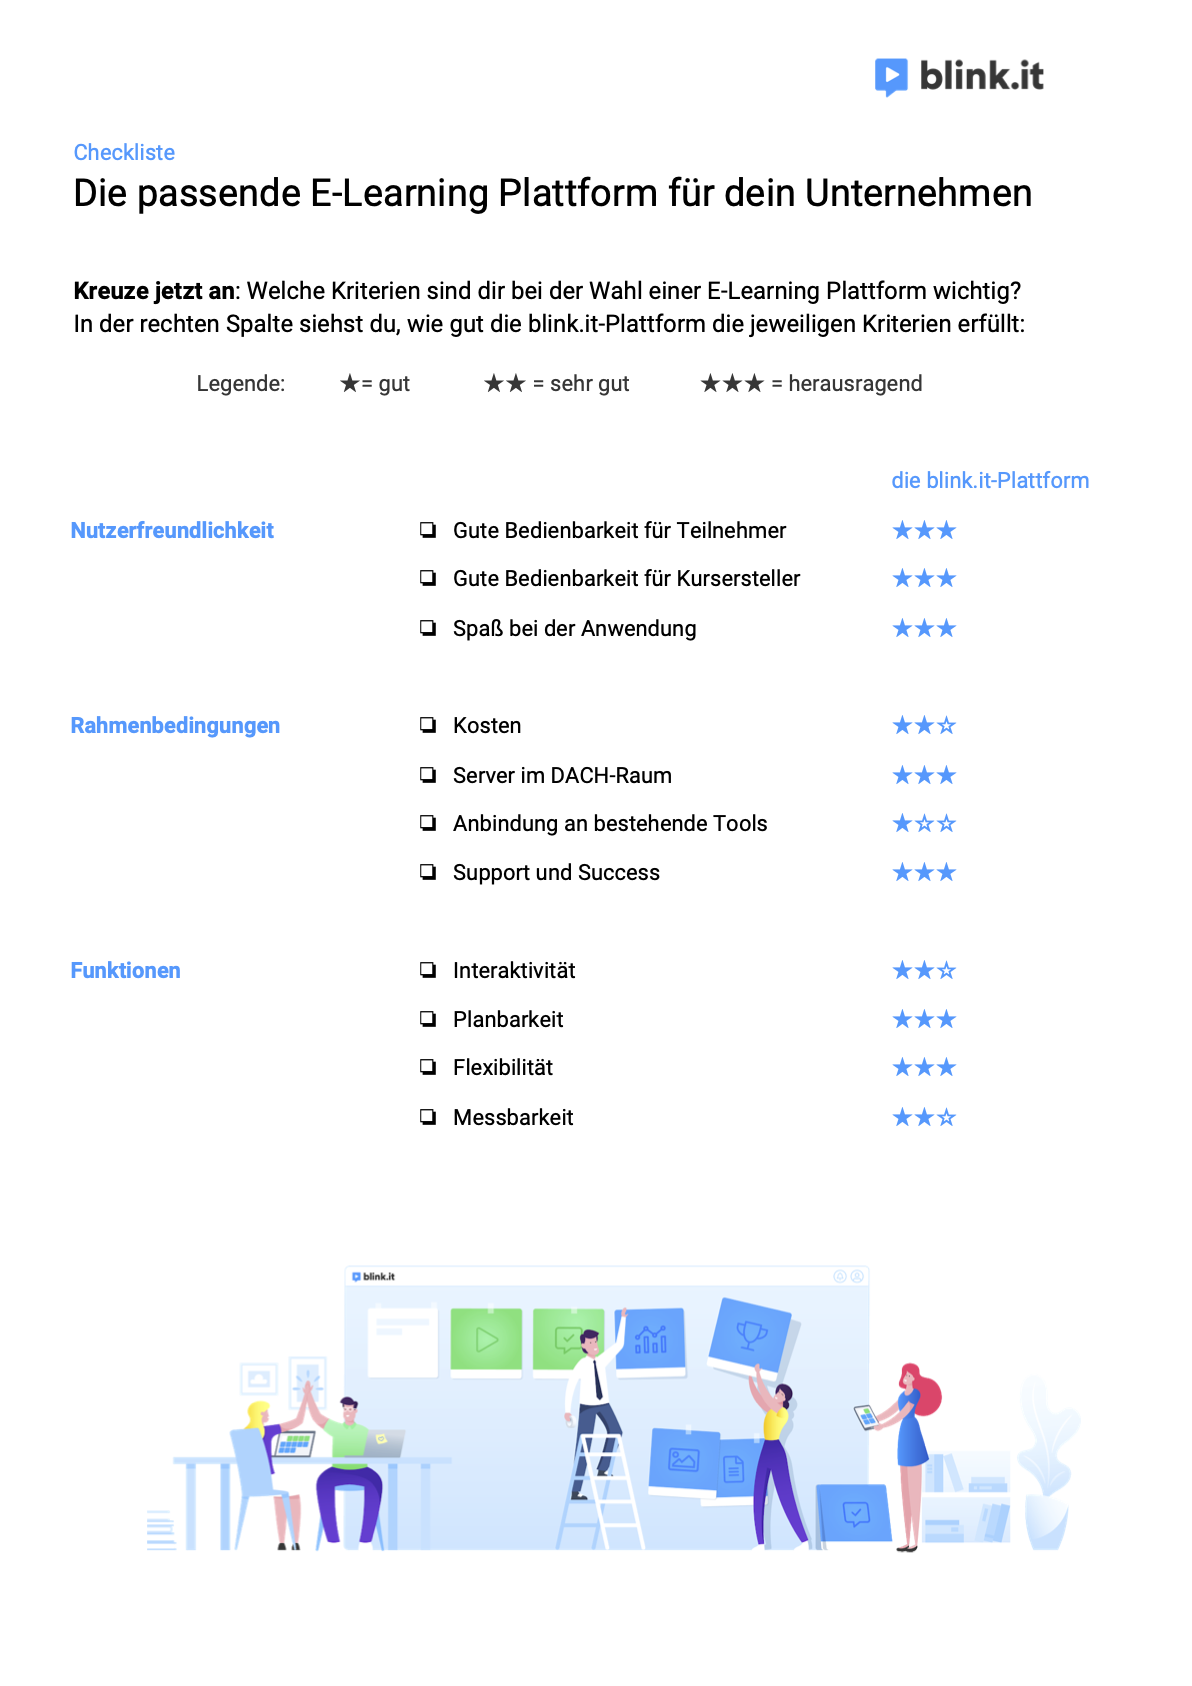 Checkliste-E-Learning-Plattform-Kriterien-blinkit